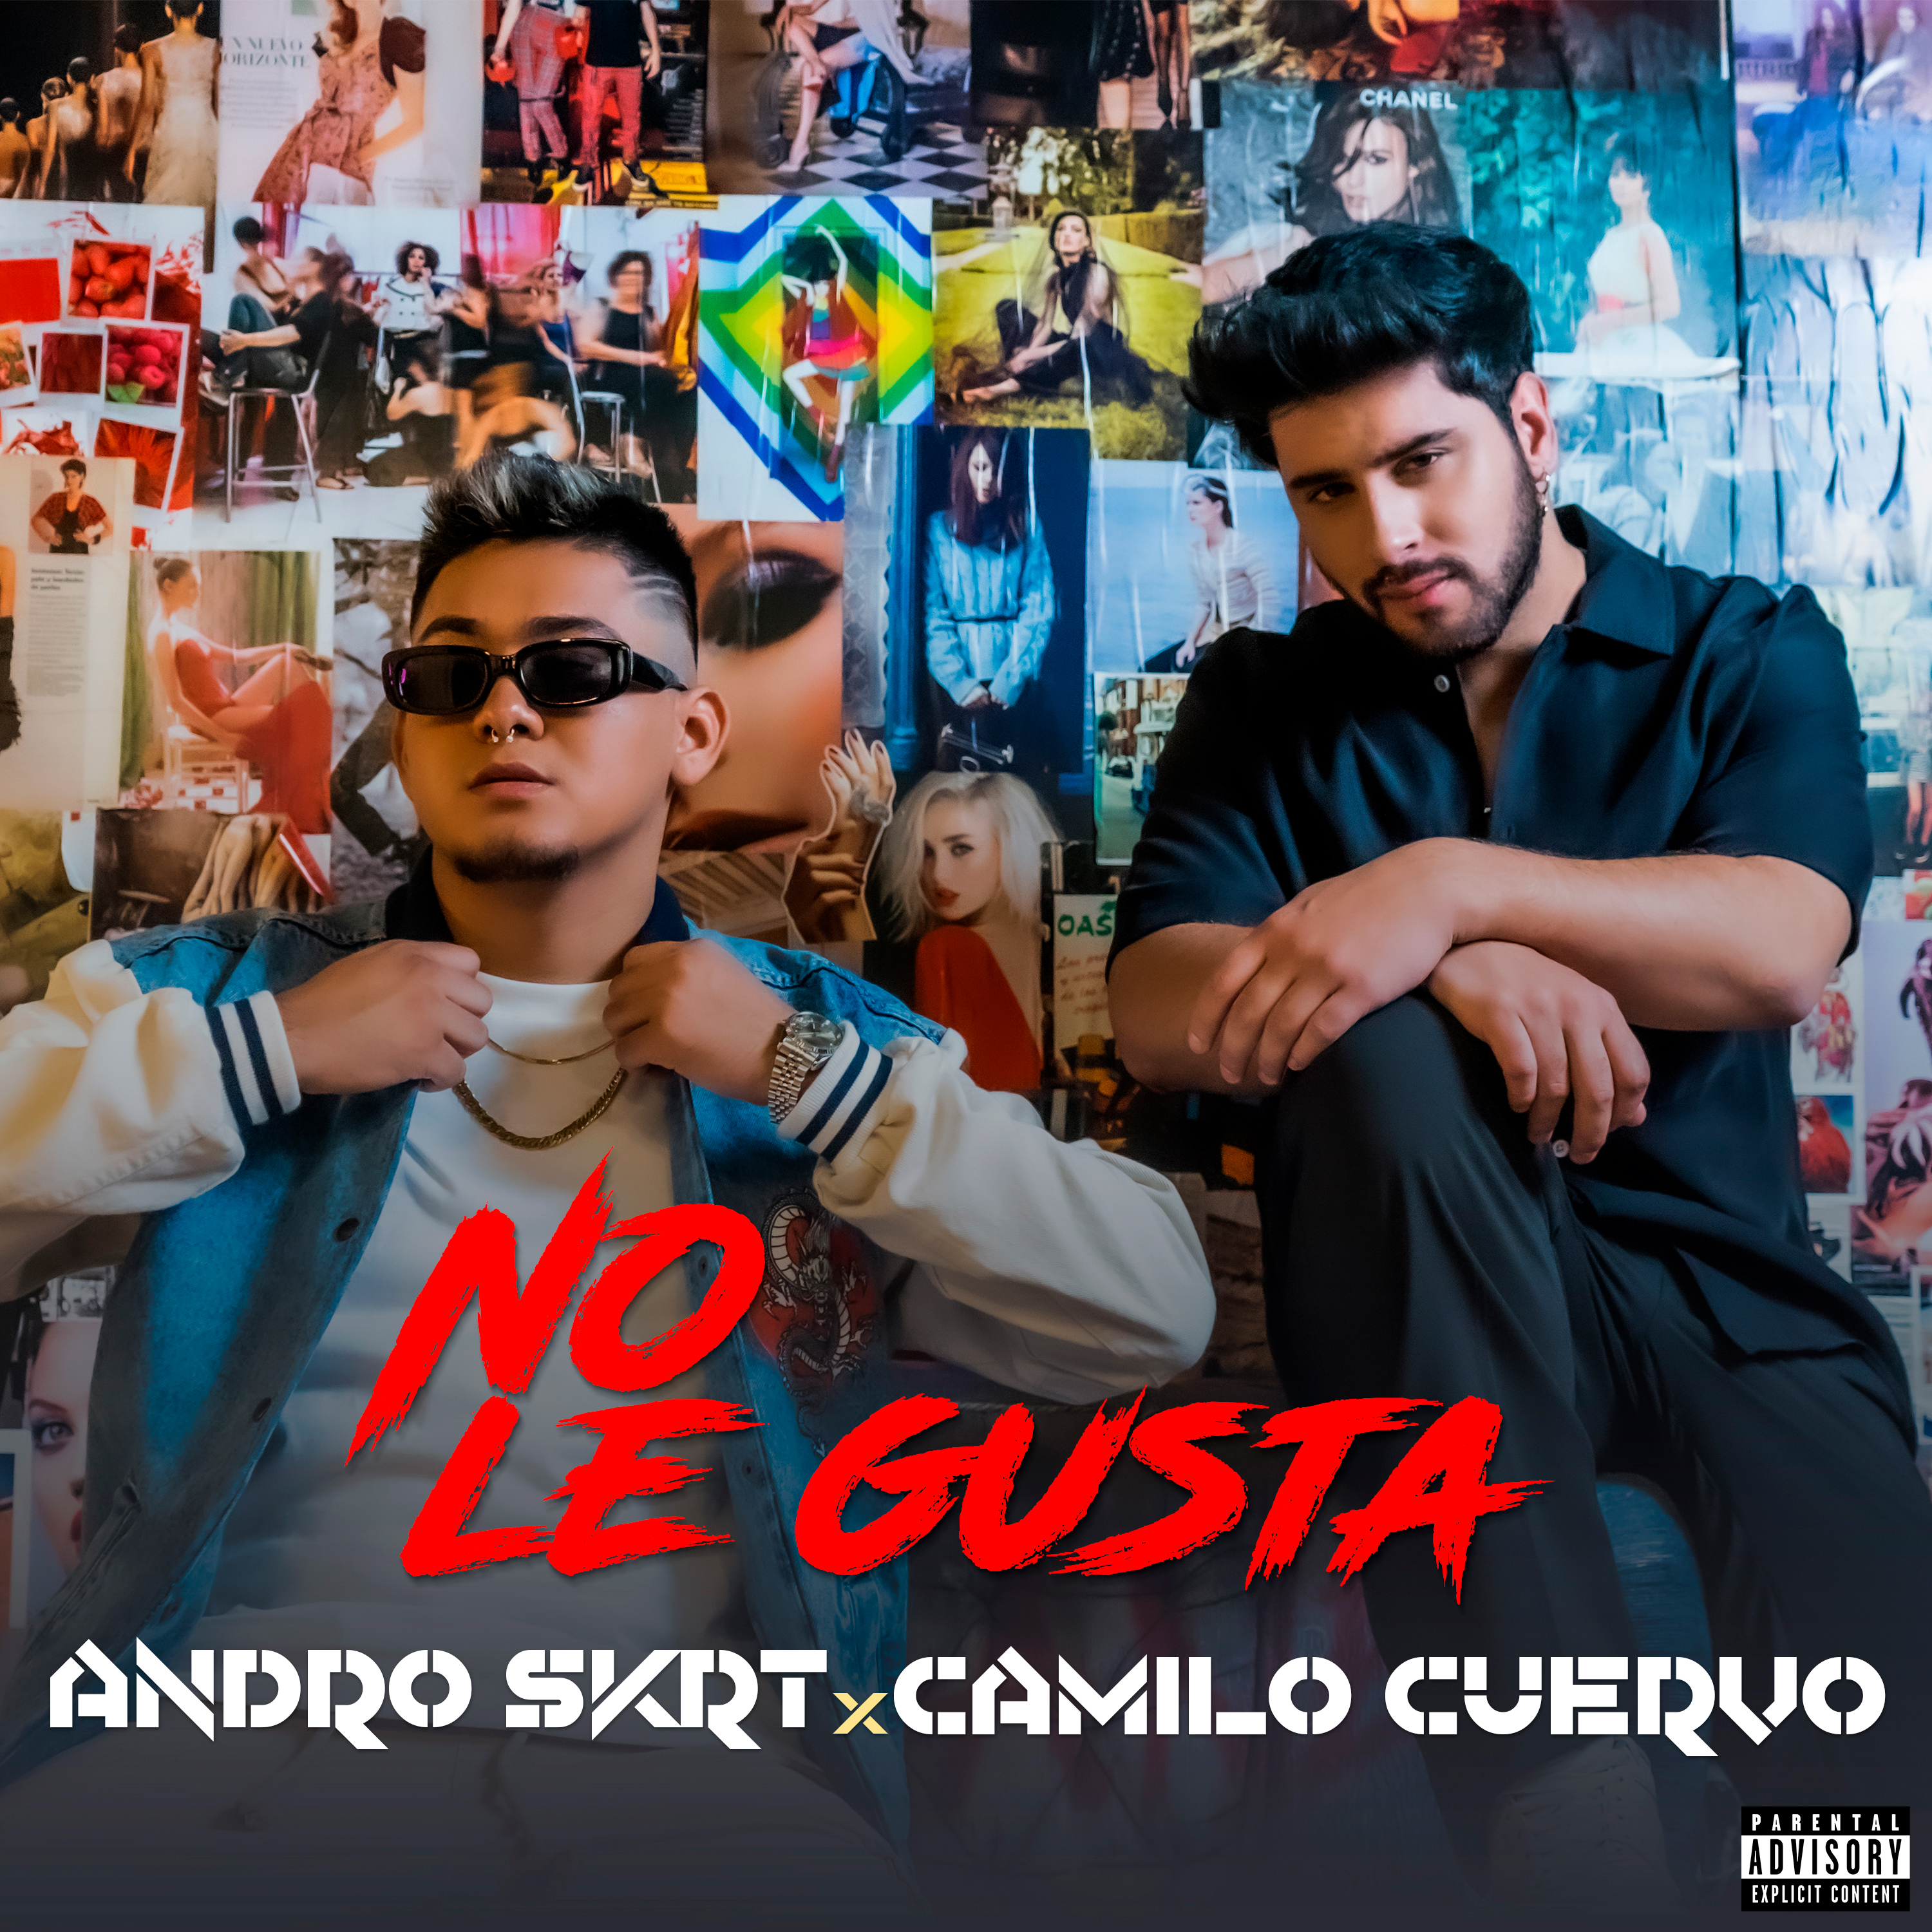 Camilo Cuervo y Andro Skrt presentan «No le gusta», su lanzamiento musical